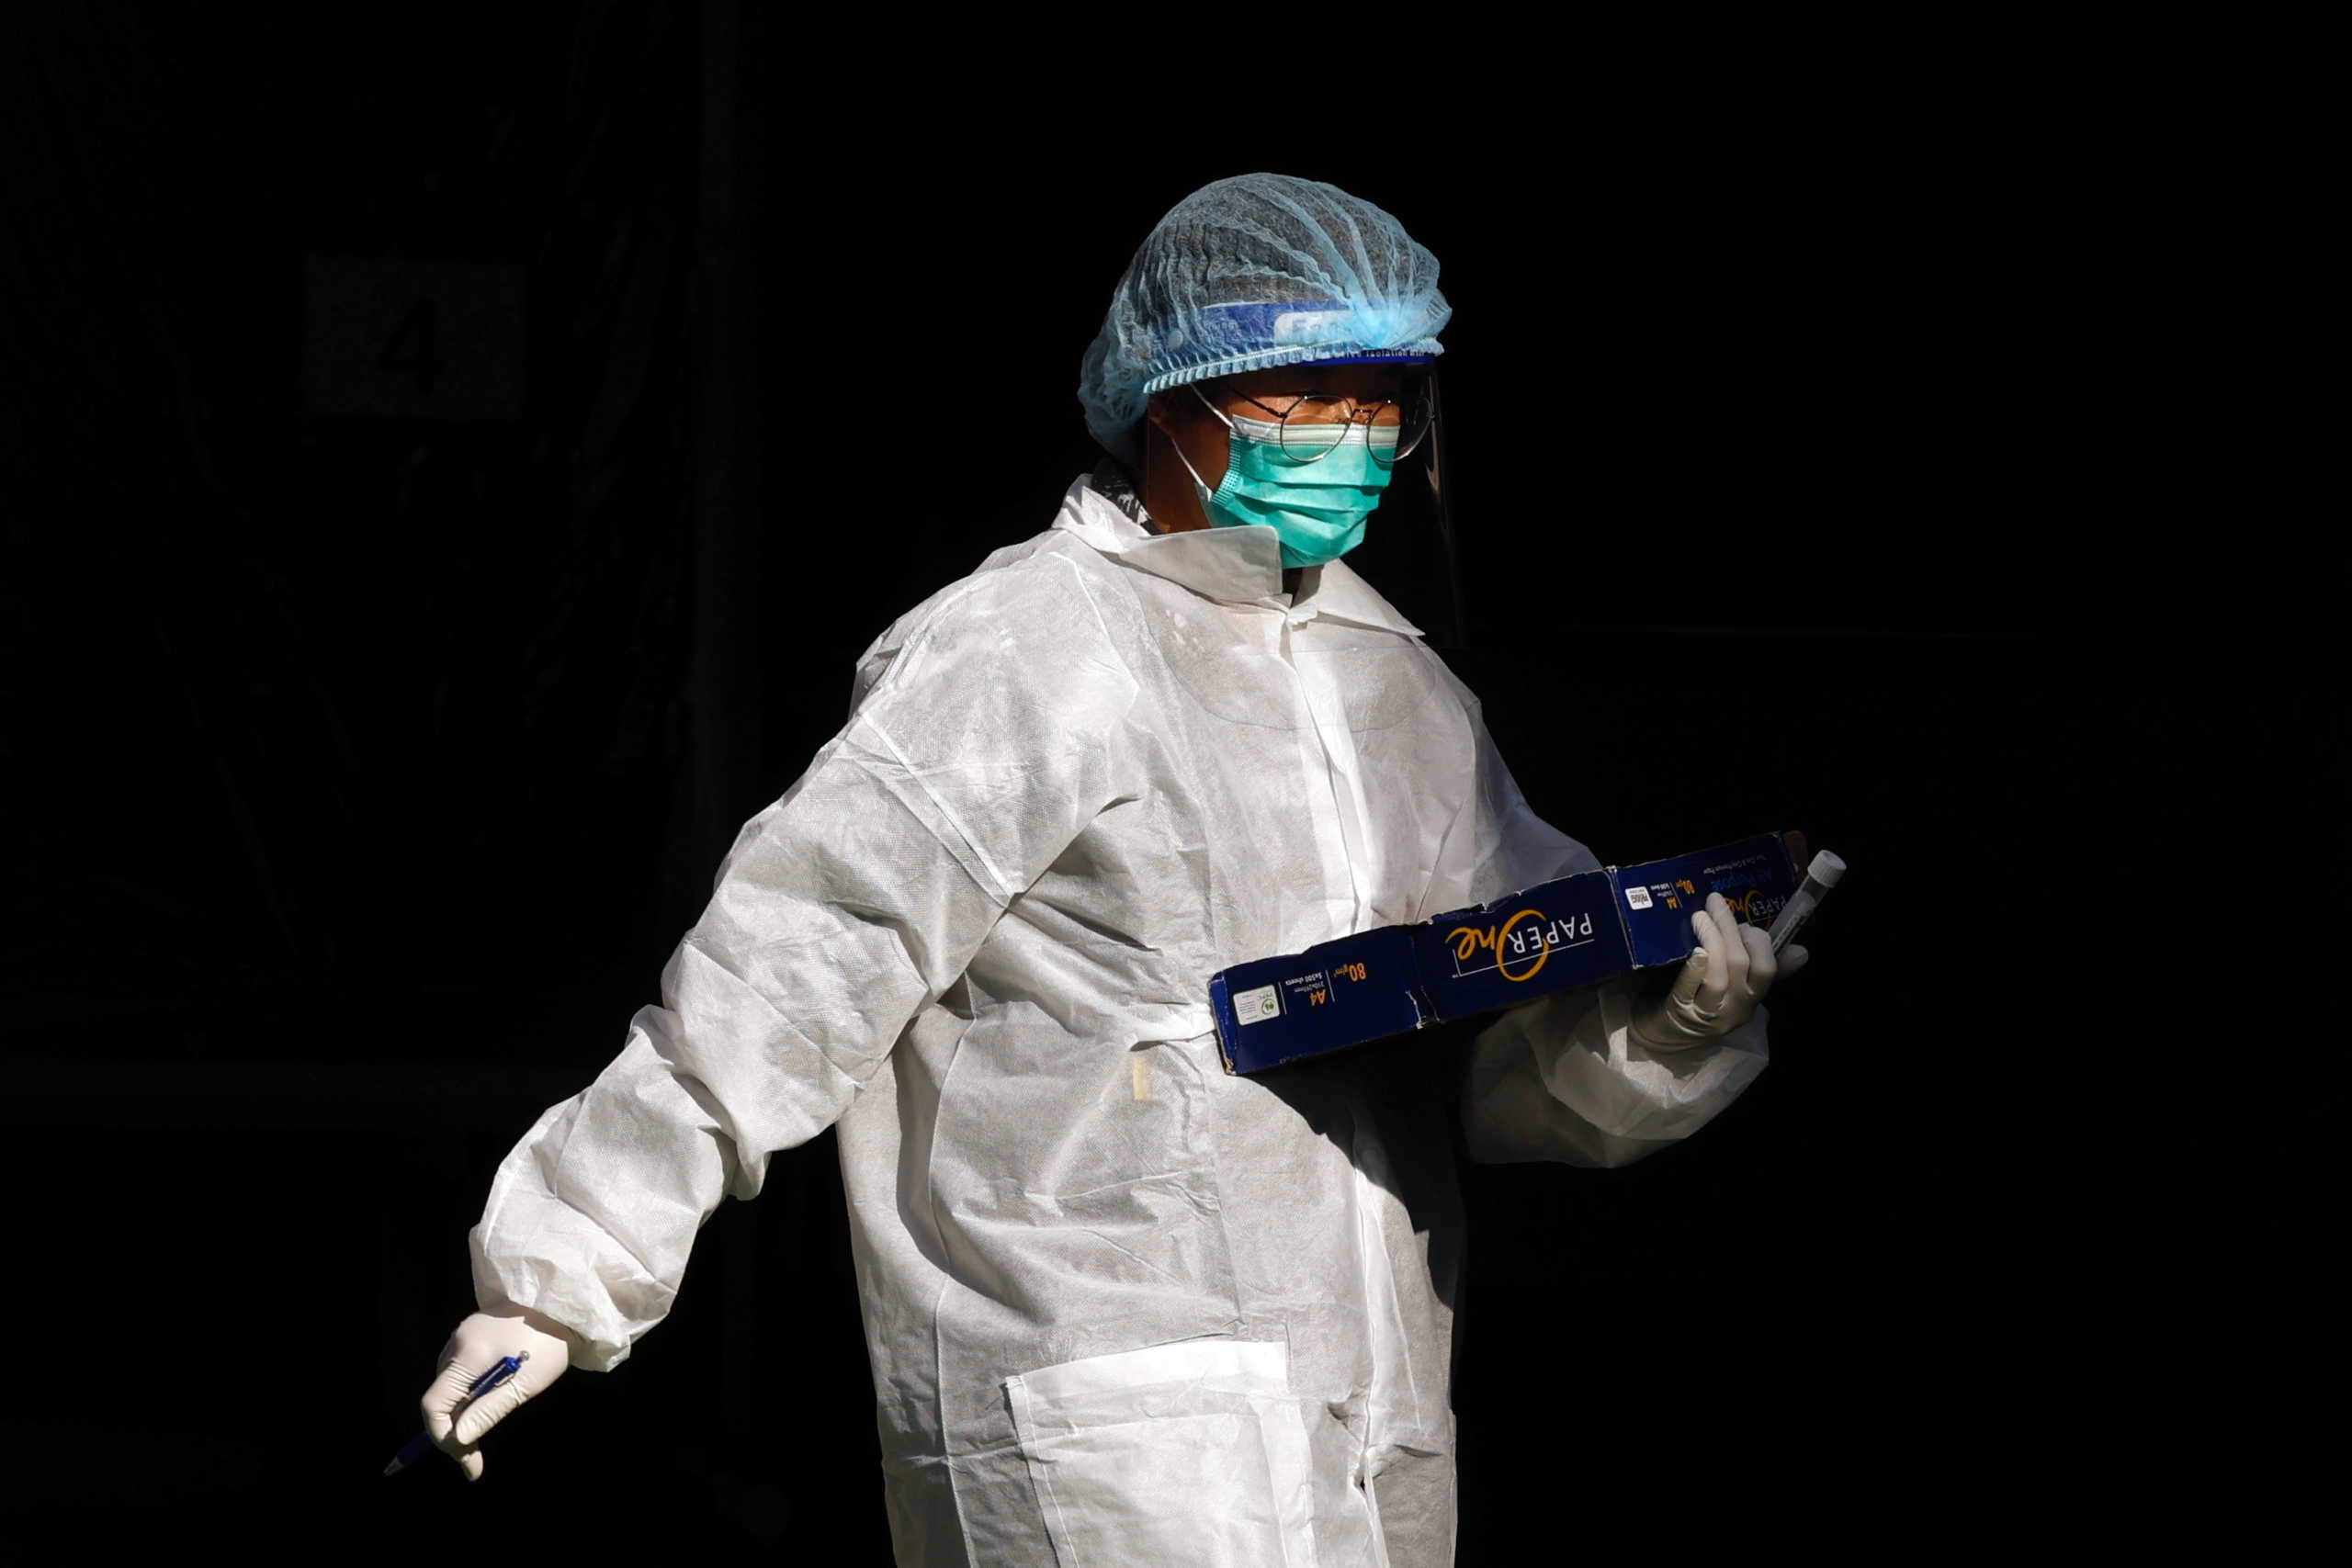 ΗΠΑ: Νέα έρευνα για προέλευση του ιού επιβεβαιώνει ότι διέρρευσε από εργαστήριο στην Ουχάν